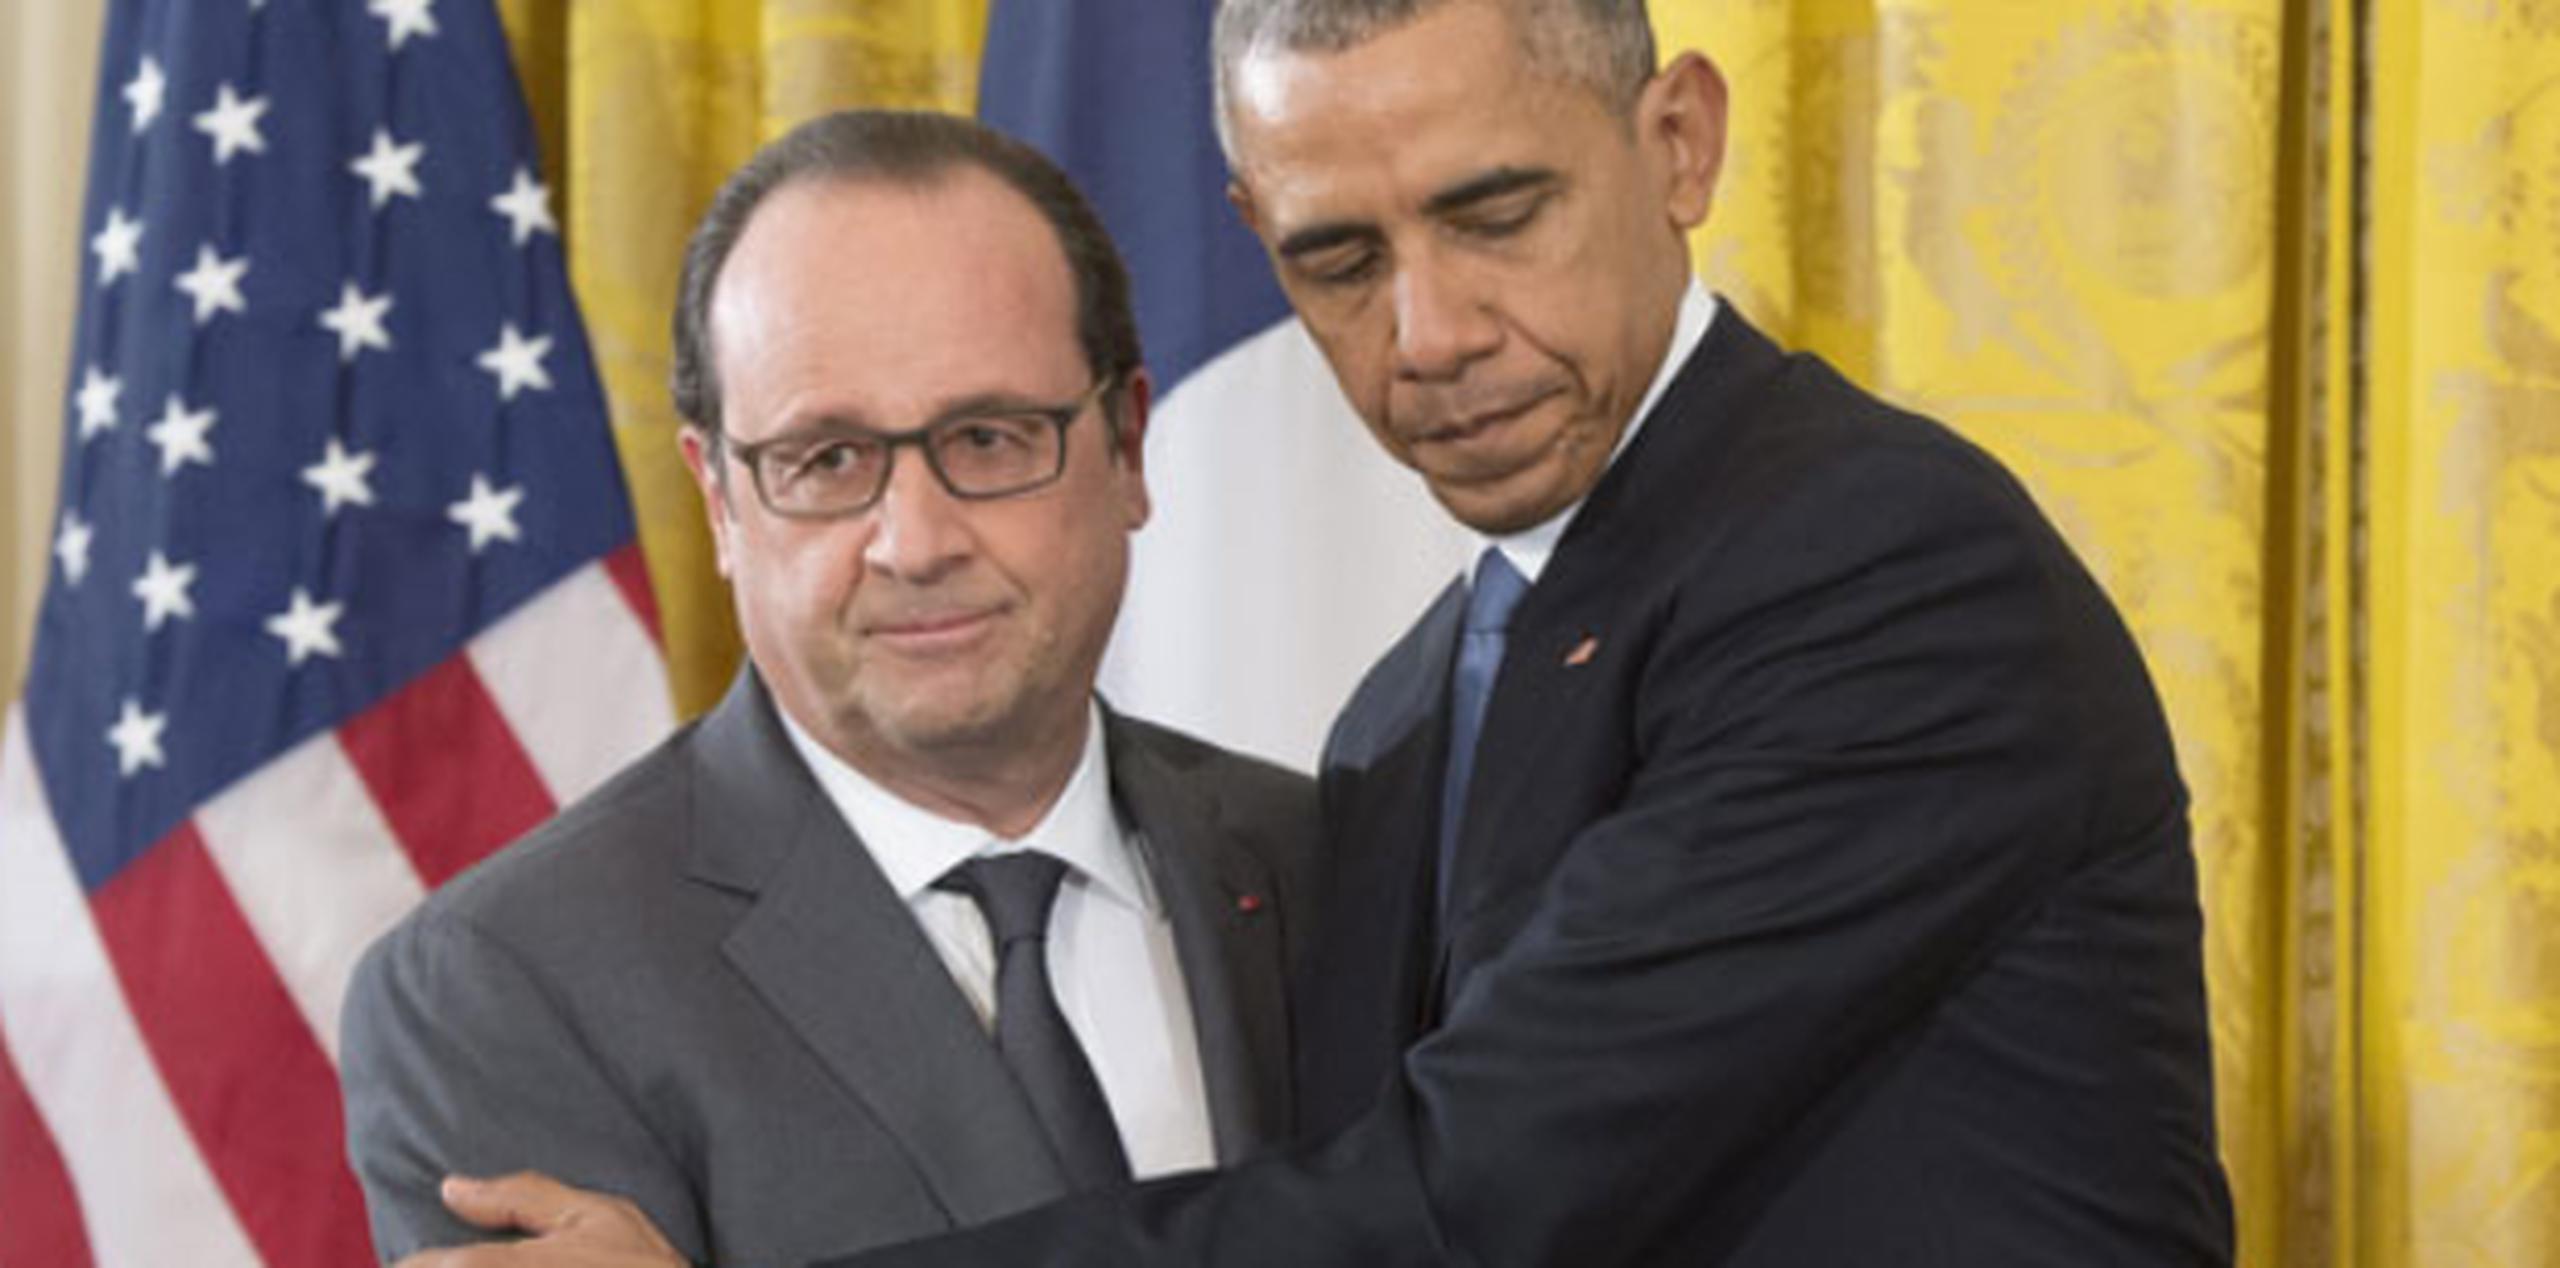 El presidente de EE.UU., Barack Obama, saluda a su homólogo francés, François Hollande. (Agencia EFE)